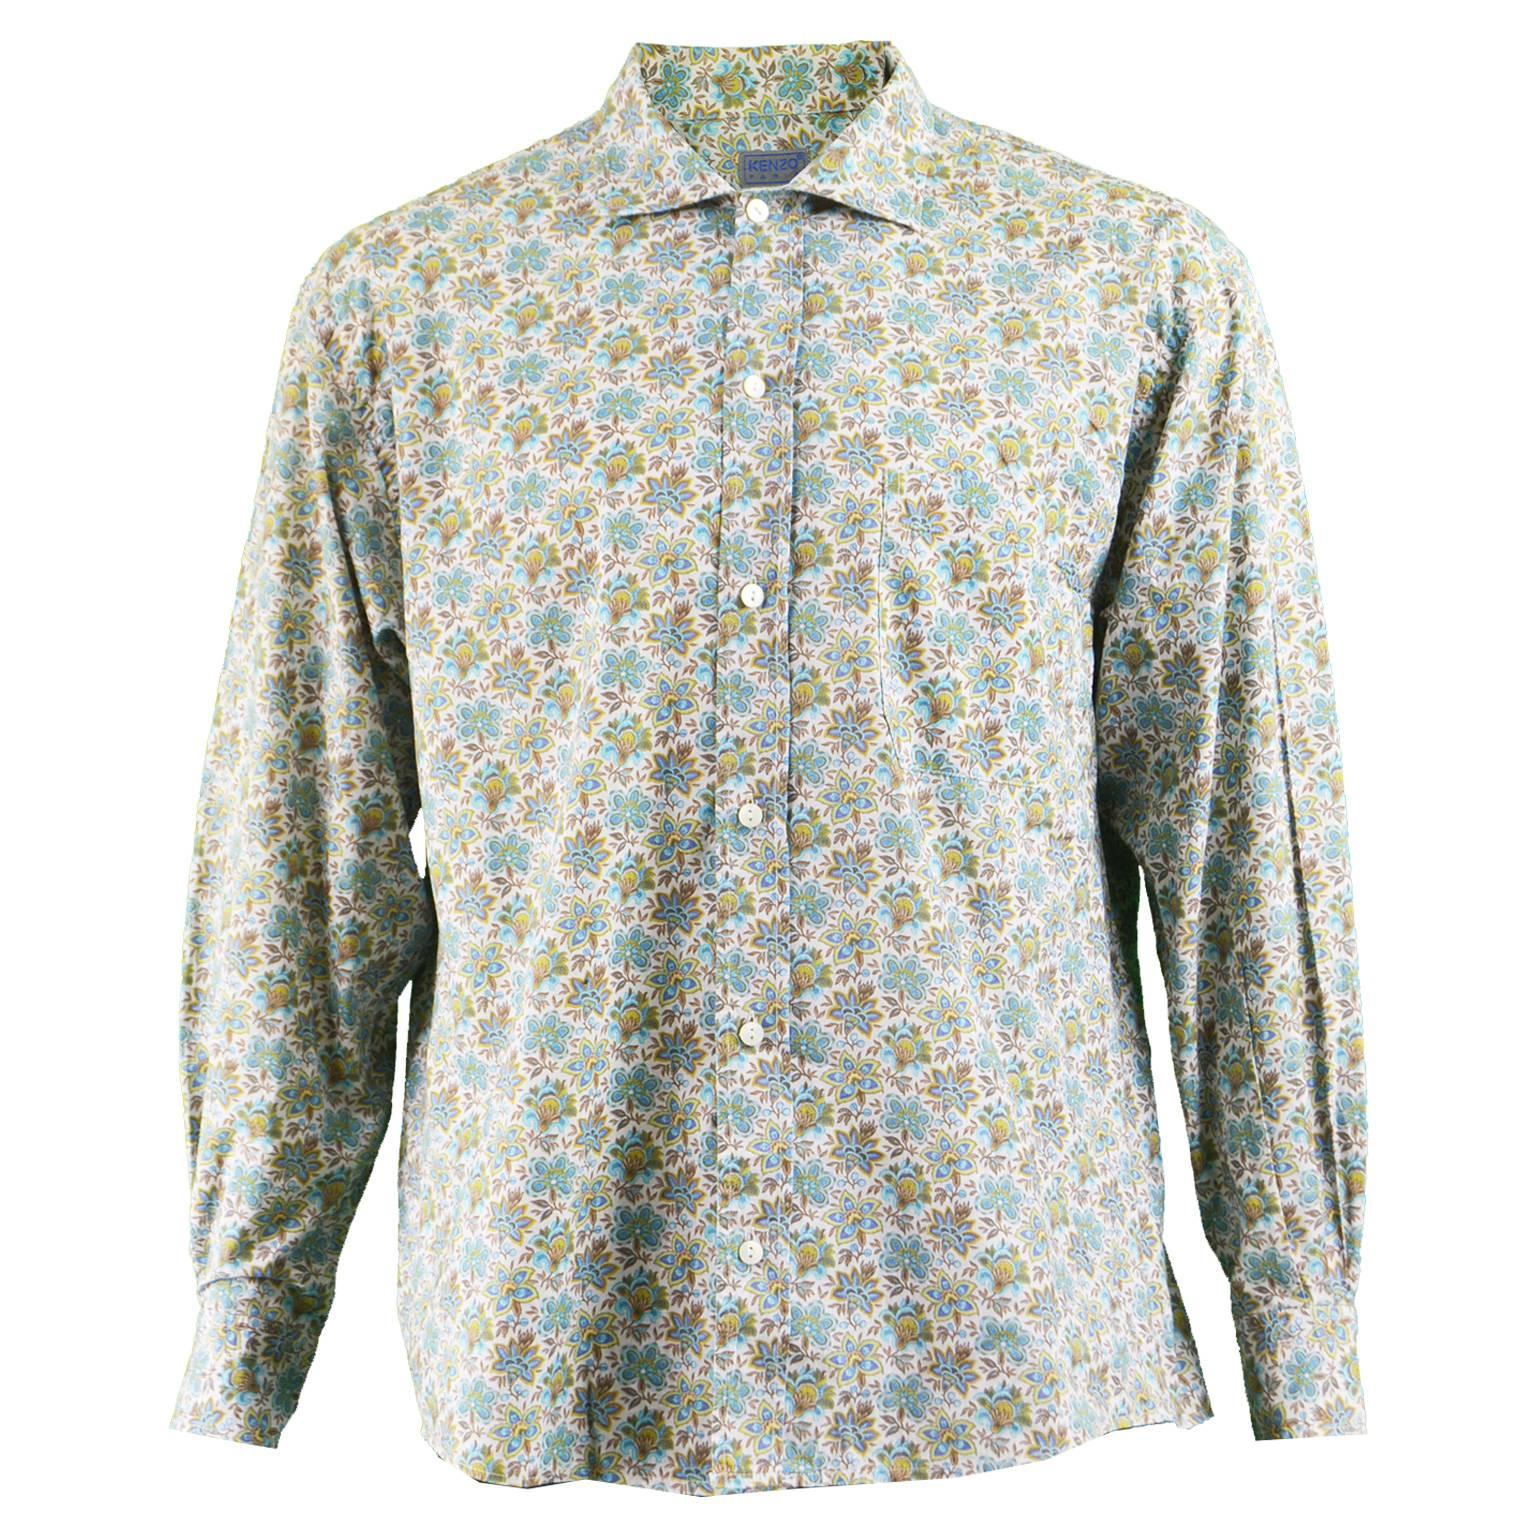 Kenzo Men's Vintage Floral Print Cotton Button Up Shirt, 1990s